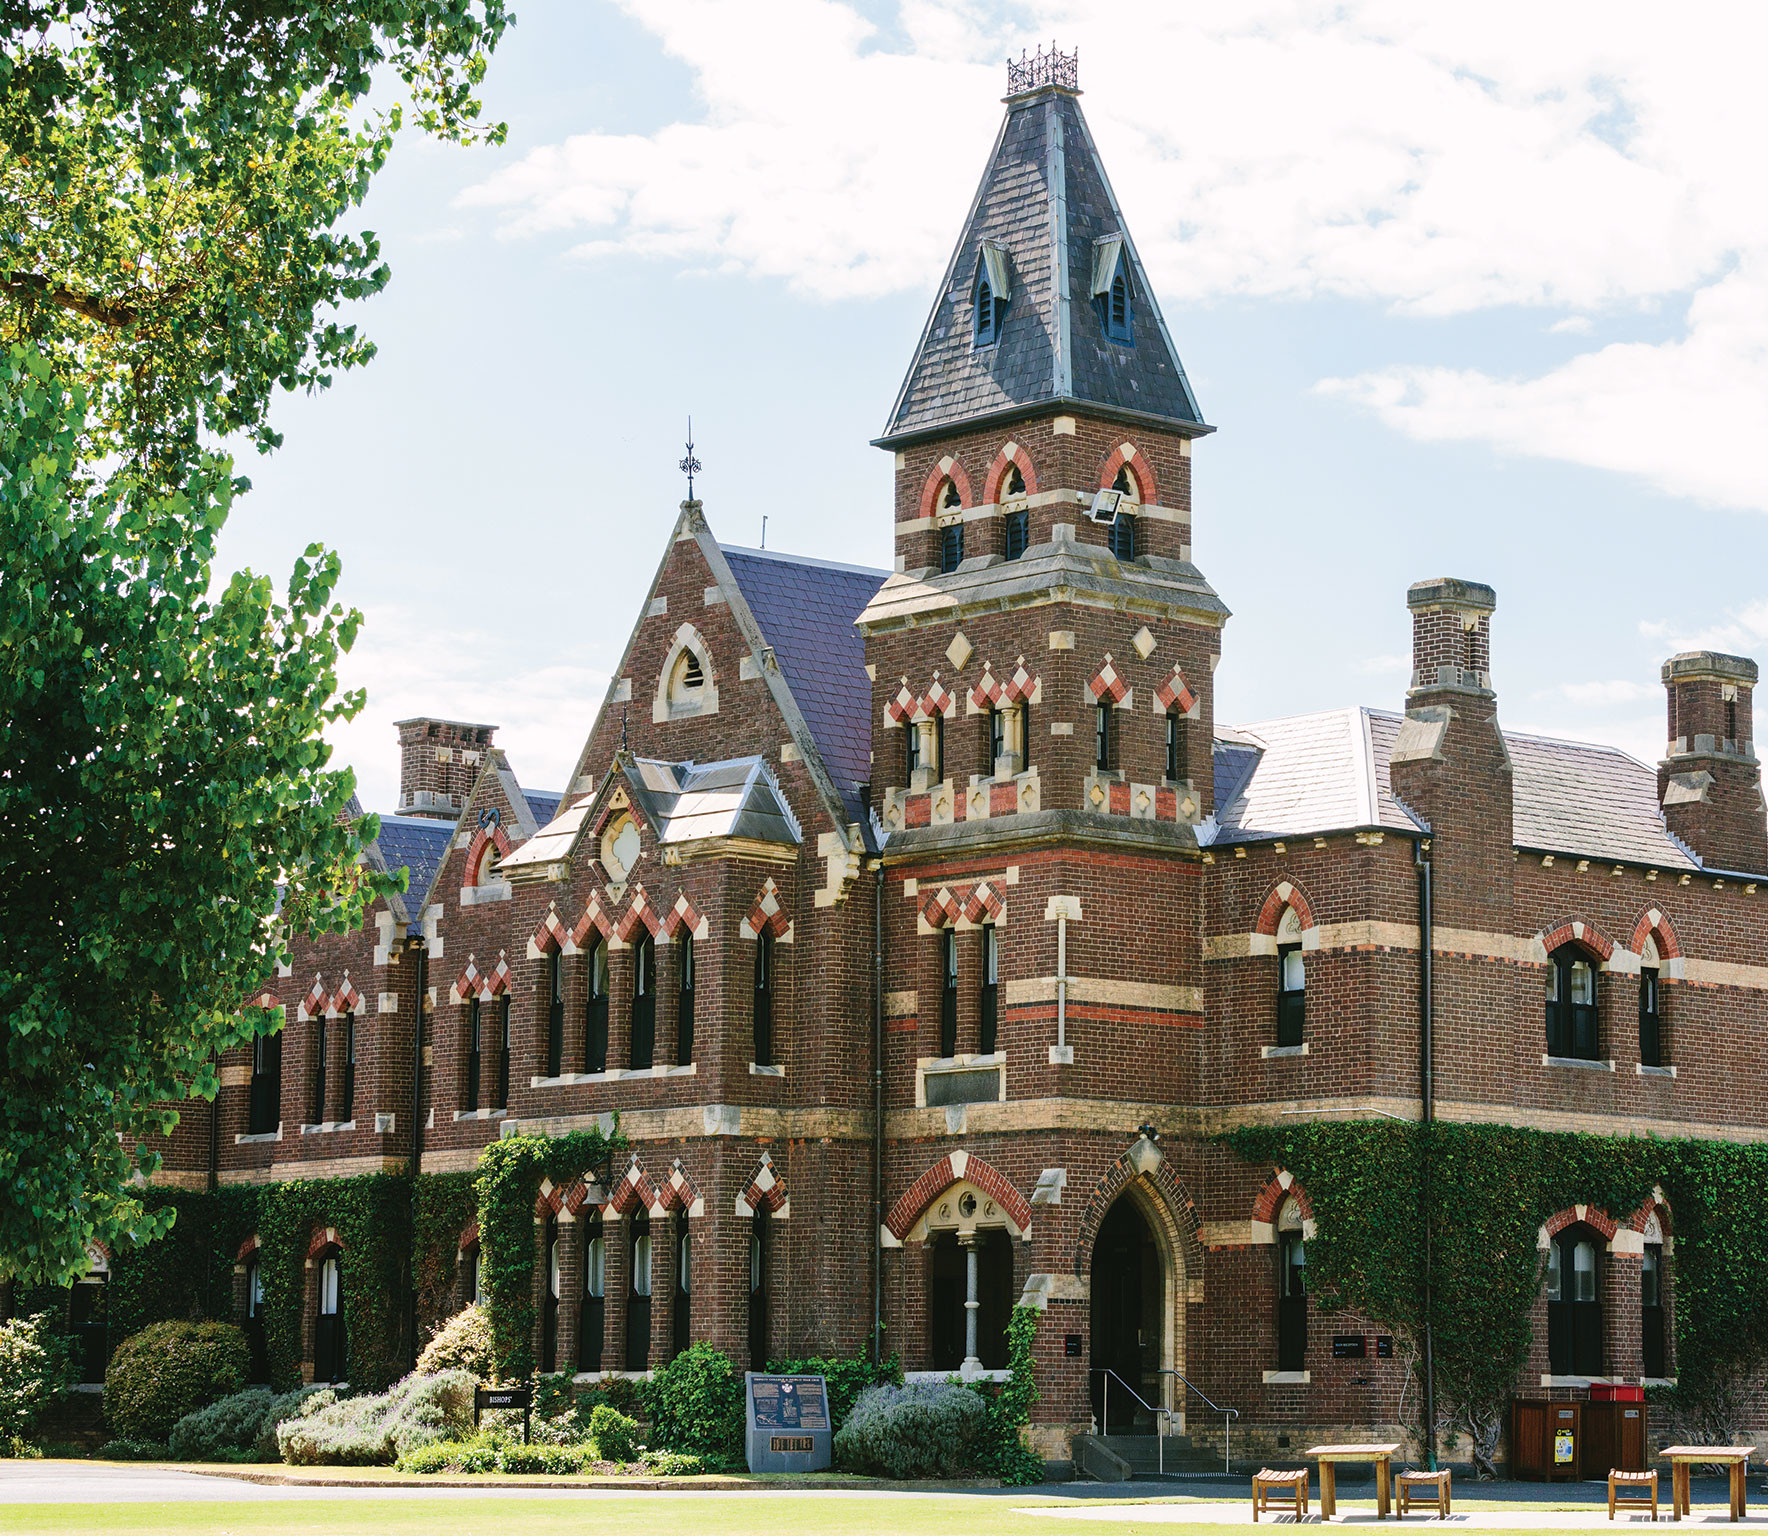 Đại học Melbourne - đứng thứ 3 trong top 10 trường đại học hàng đầu tại Úc theo bảng xếp hạng của QS World 2021.